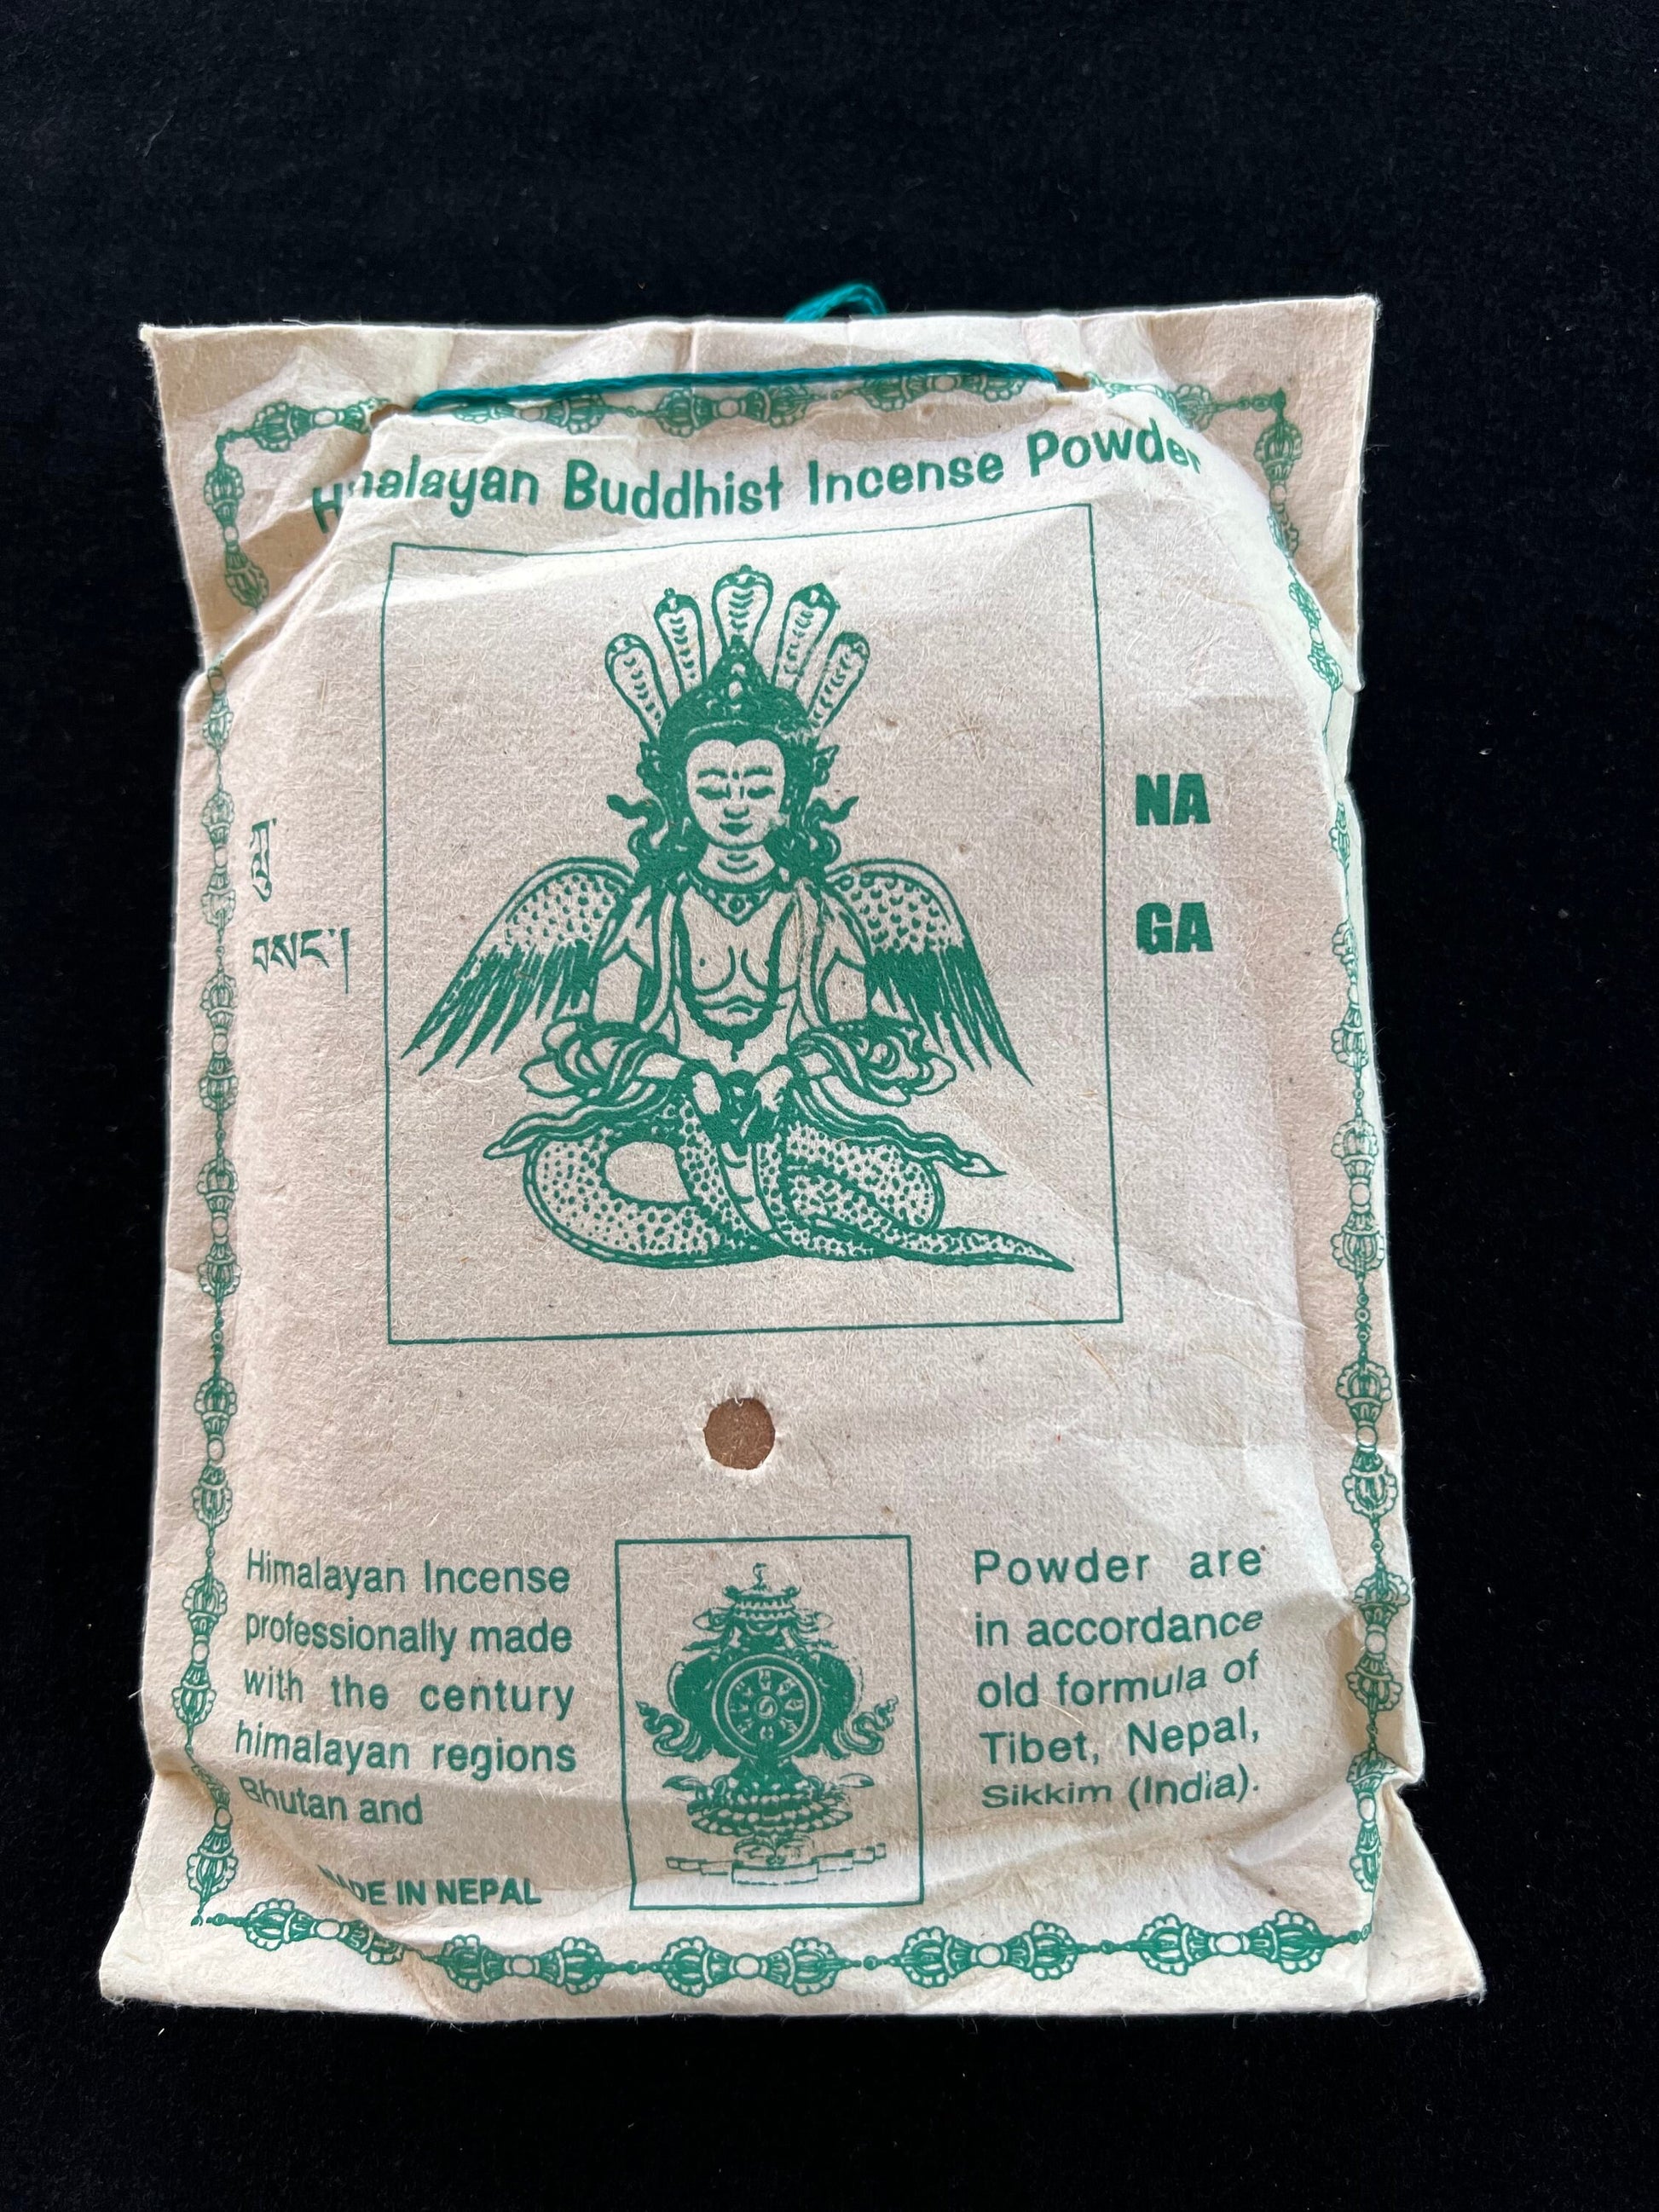 Naga Himalayan Buddhist Incense Powder | Nepalese Incense Powder | 130 grams | Himalayan Arts | Lu Sang